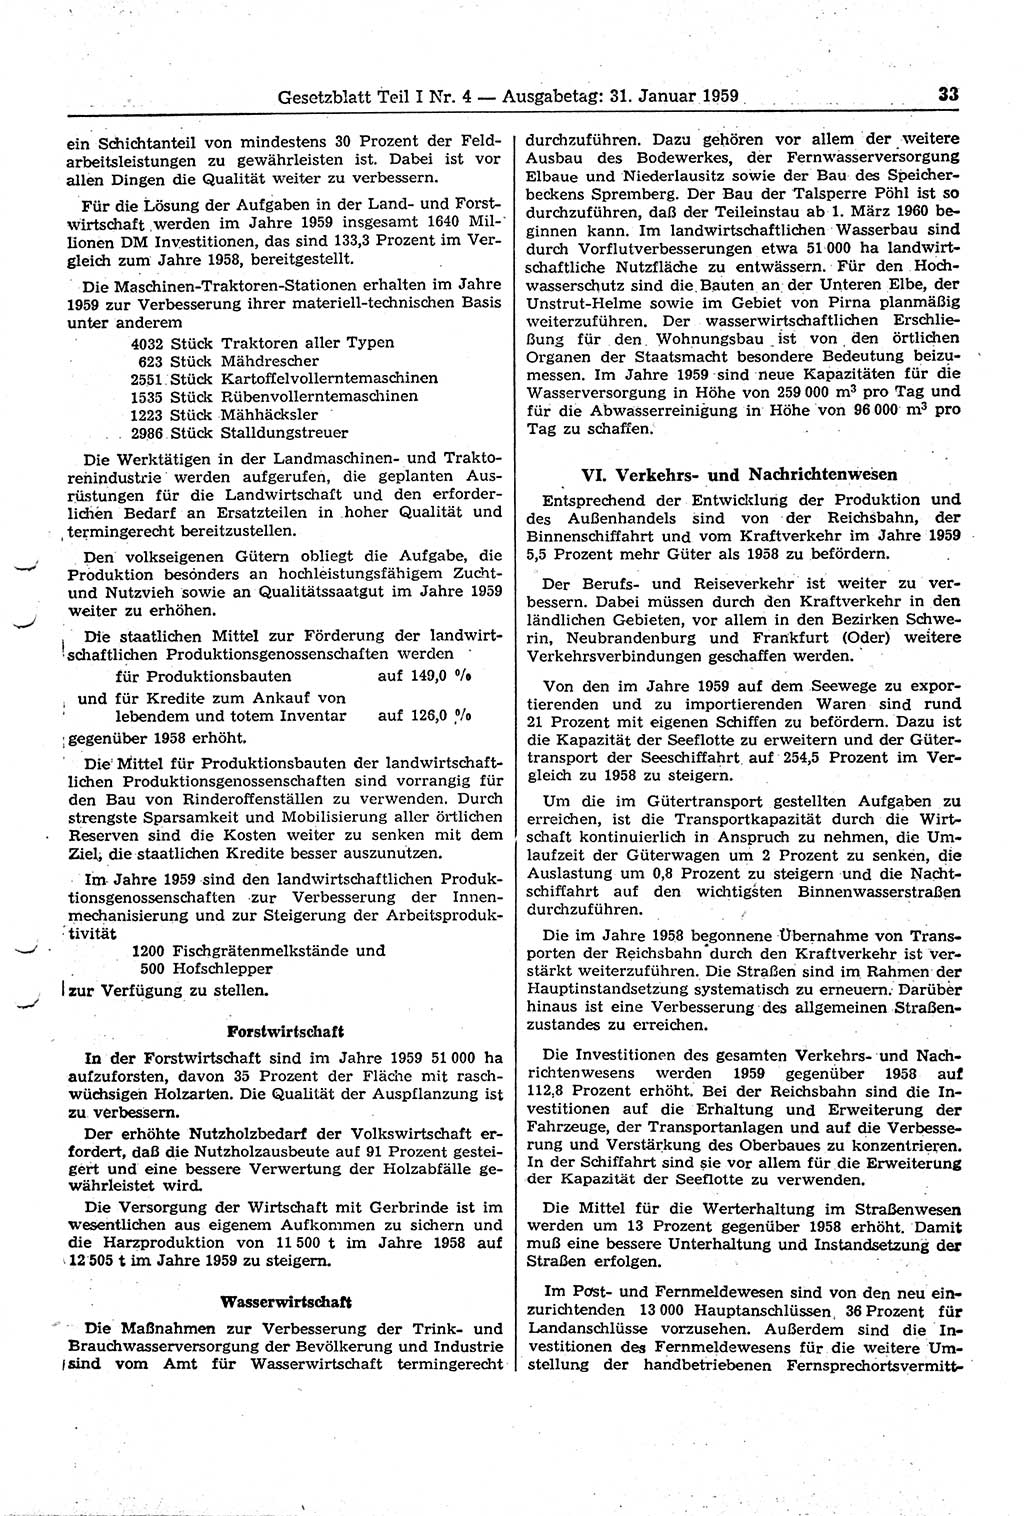 Gesetzblatt (GBl.) der Deutschen Demokratischen Republik (DDR) Teil Ⅰ 1959, Seite 33 (GBl. DDR Ⅰ 1959, S. 33)